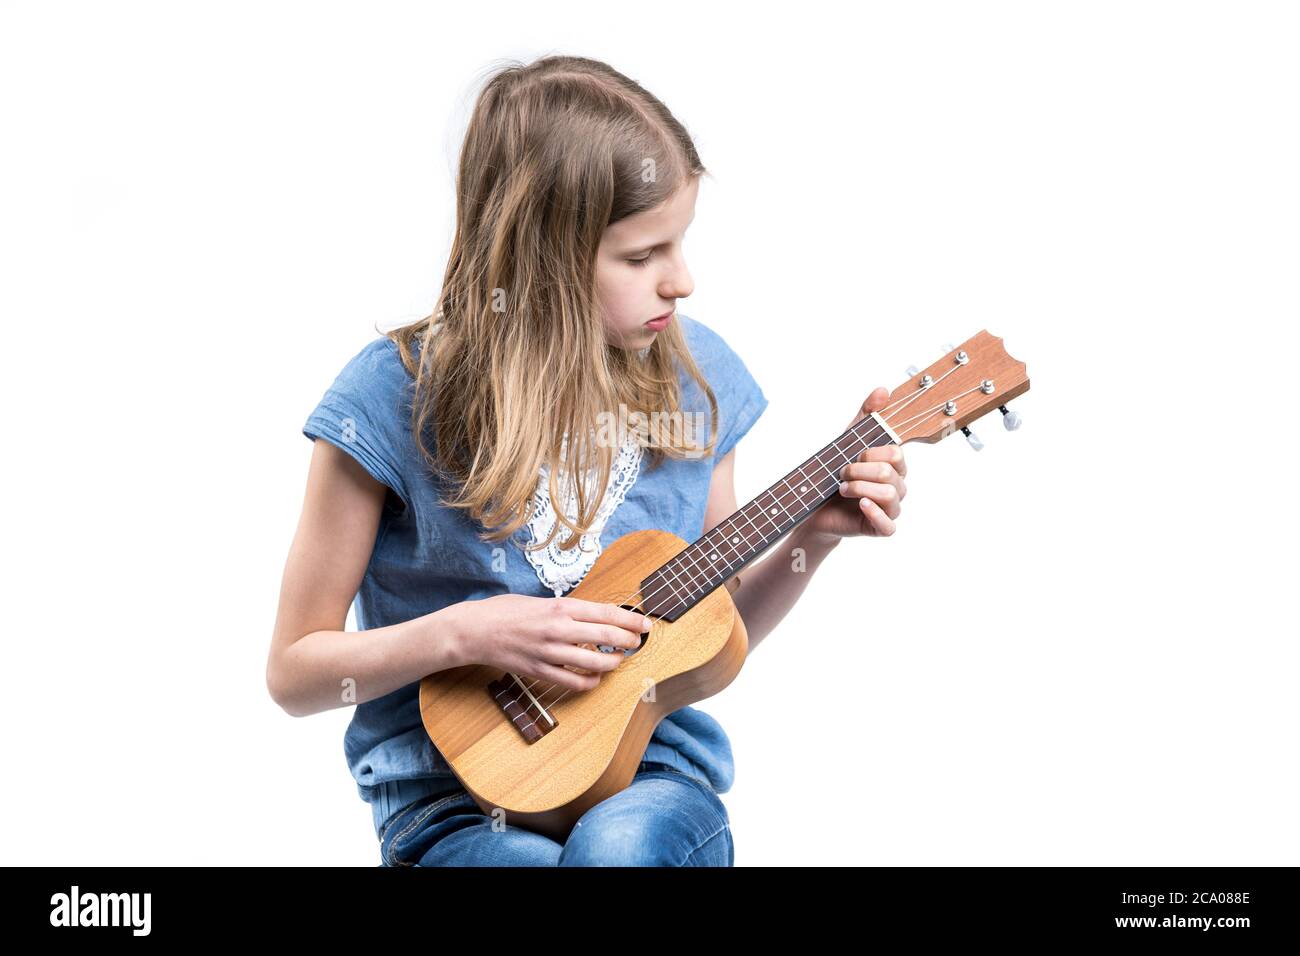 Junge, blonde Mädchen in blauem T-Shirt spielt Musik auf Ukulele-Instrument. Stockfoto